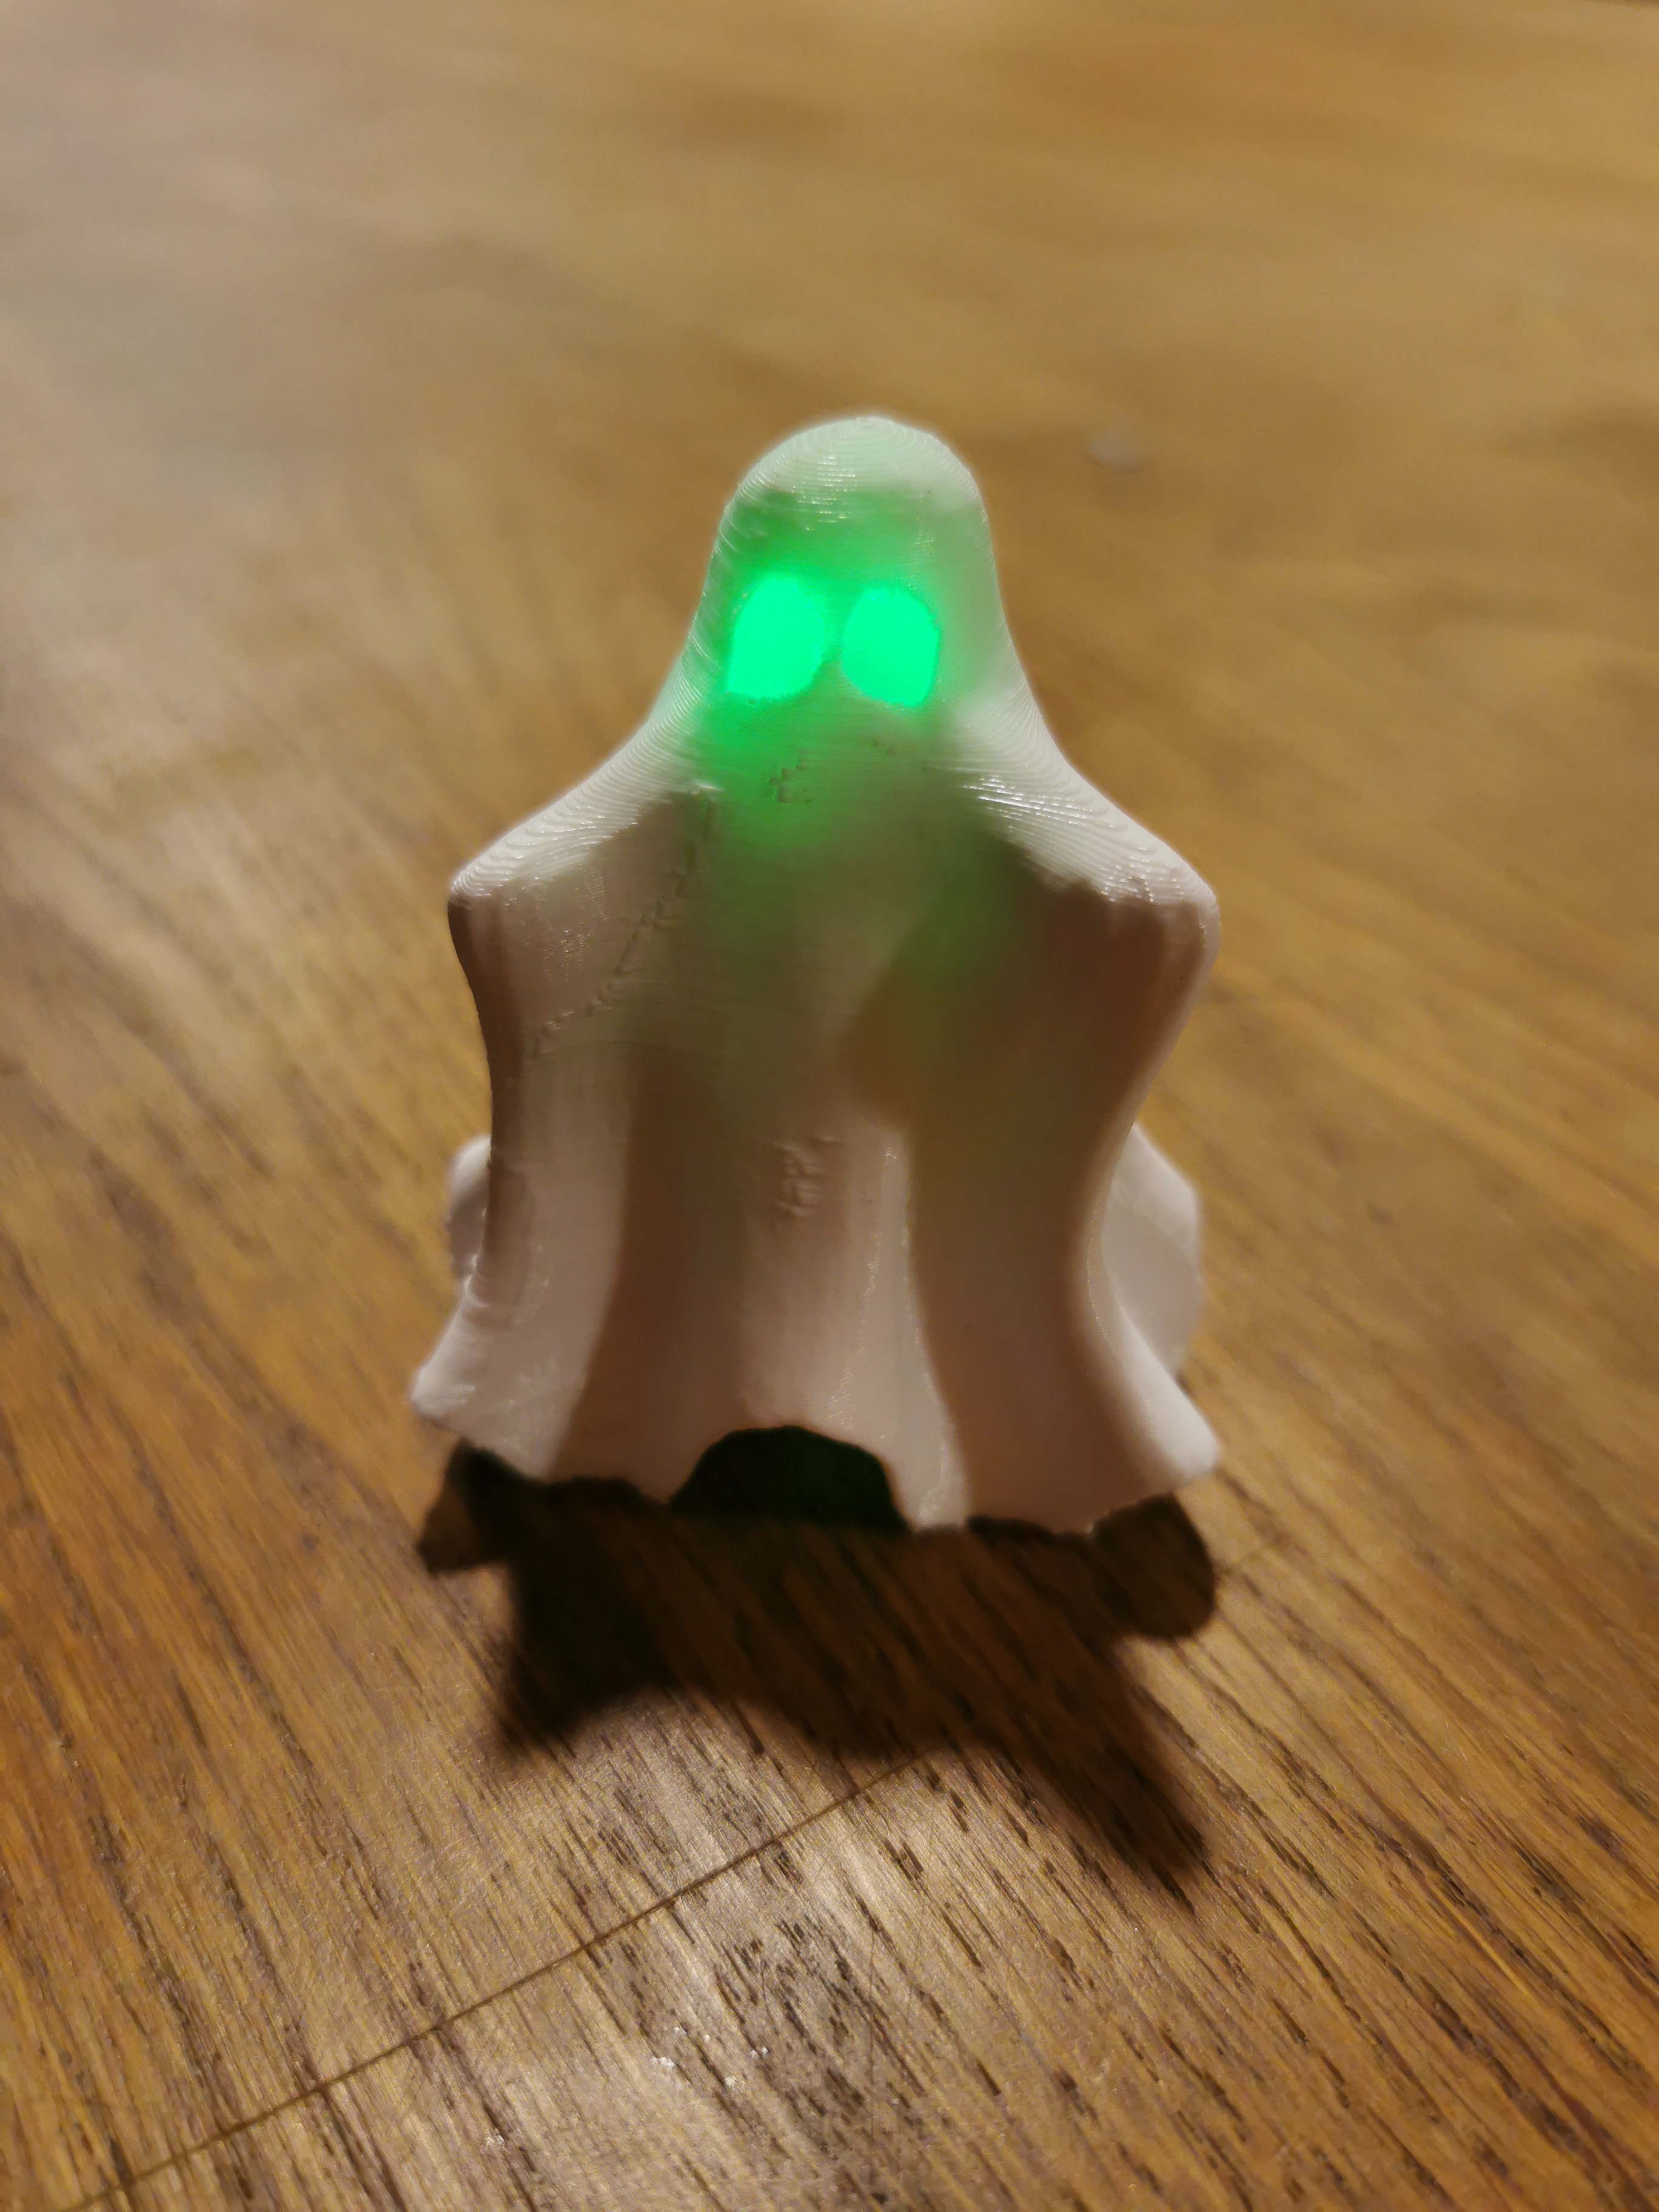 Et 3D-printet spøkelse med et grønt lys inni